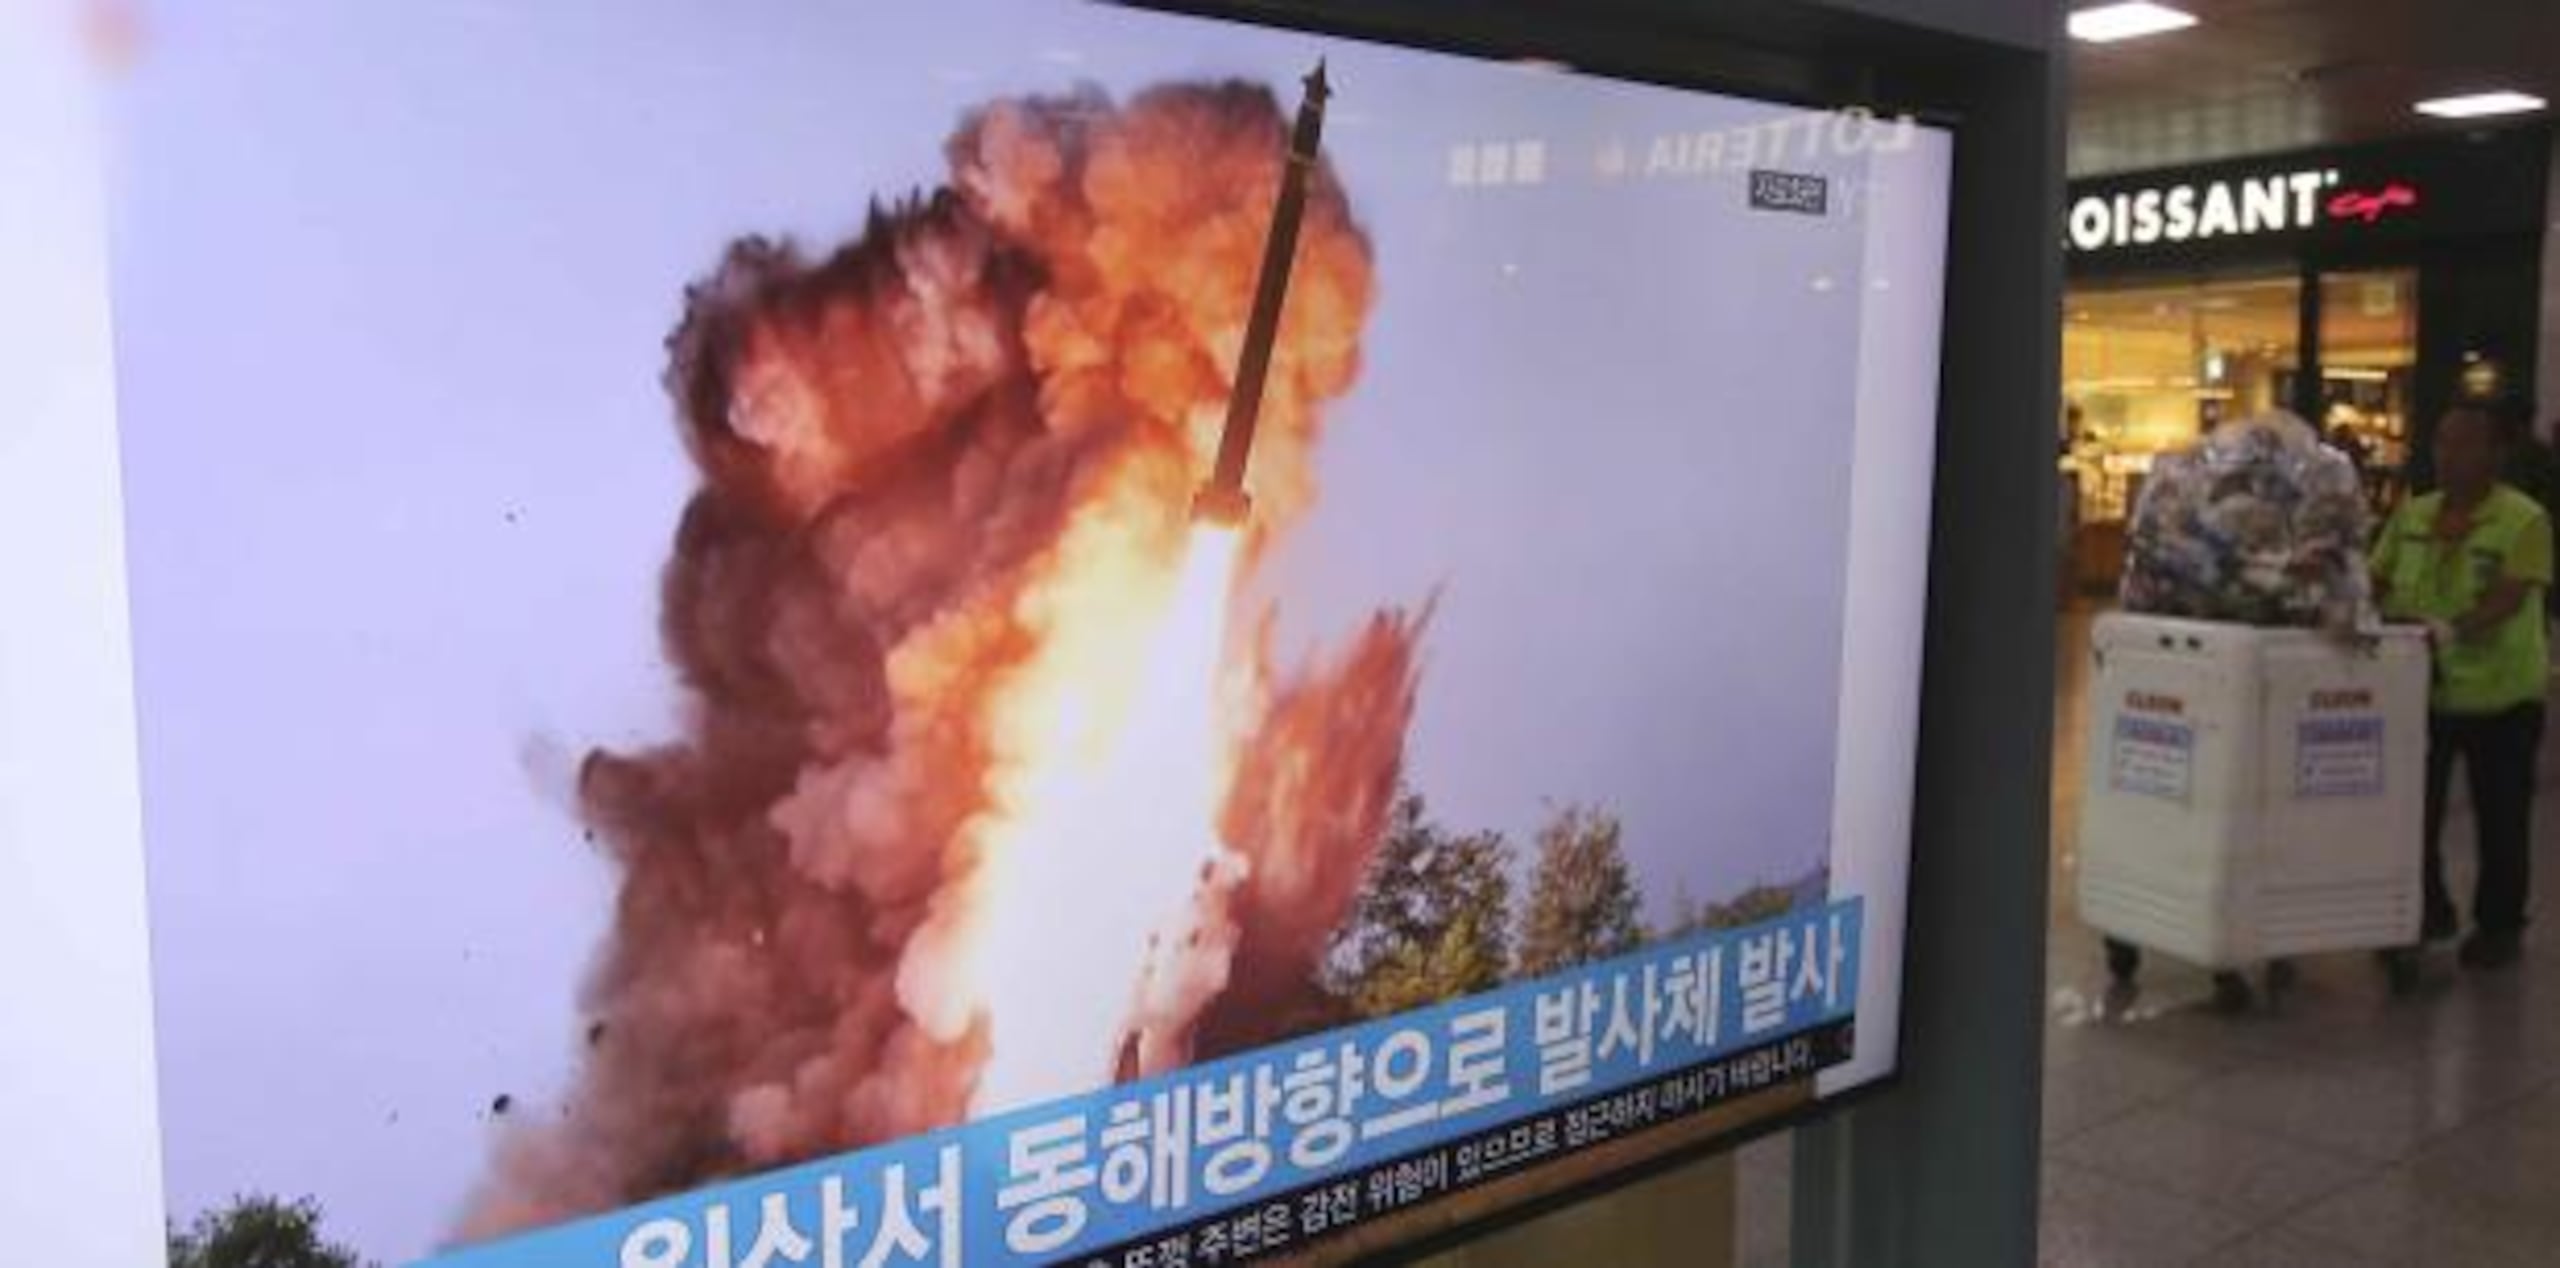 Algunos analistas señalaron que la amenaza podría ser una estrategia para presionar a Estados Unidos para que haga concesiones. (AP / Ahn Young-joon)